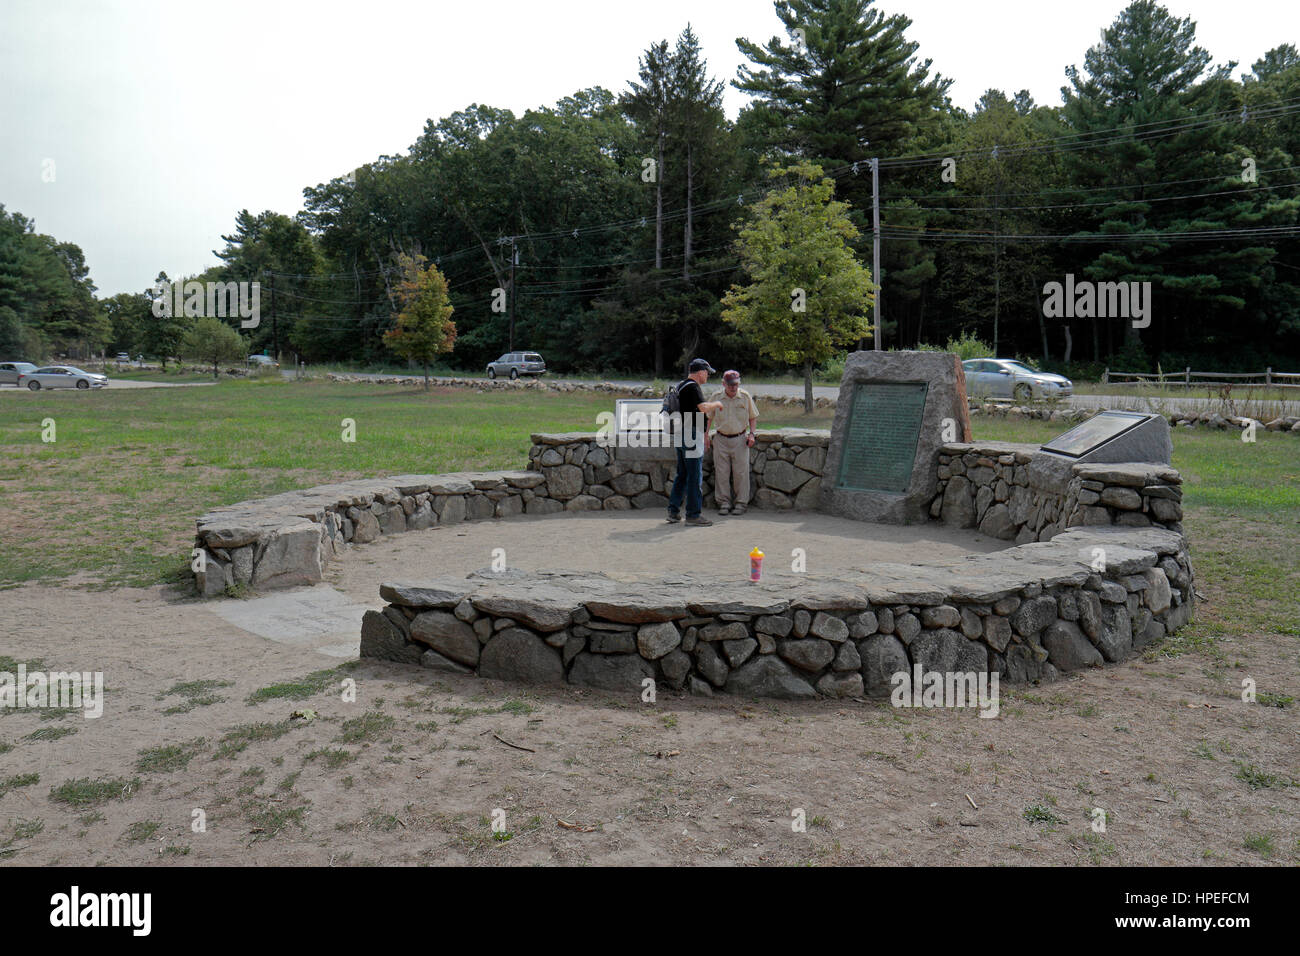 Site de capture de Paul Revere dans Minute Man National Historical Park, comté de Middlesex, Massachusetts, United States. Banque D'Images